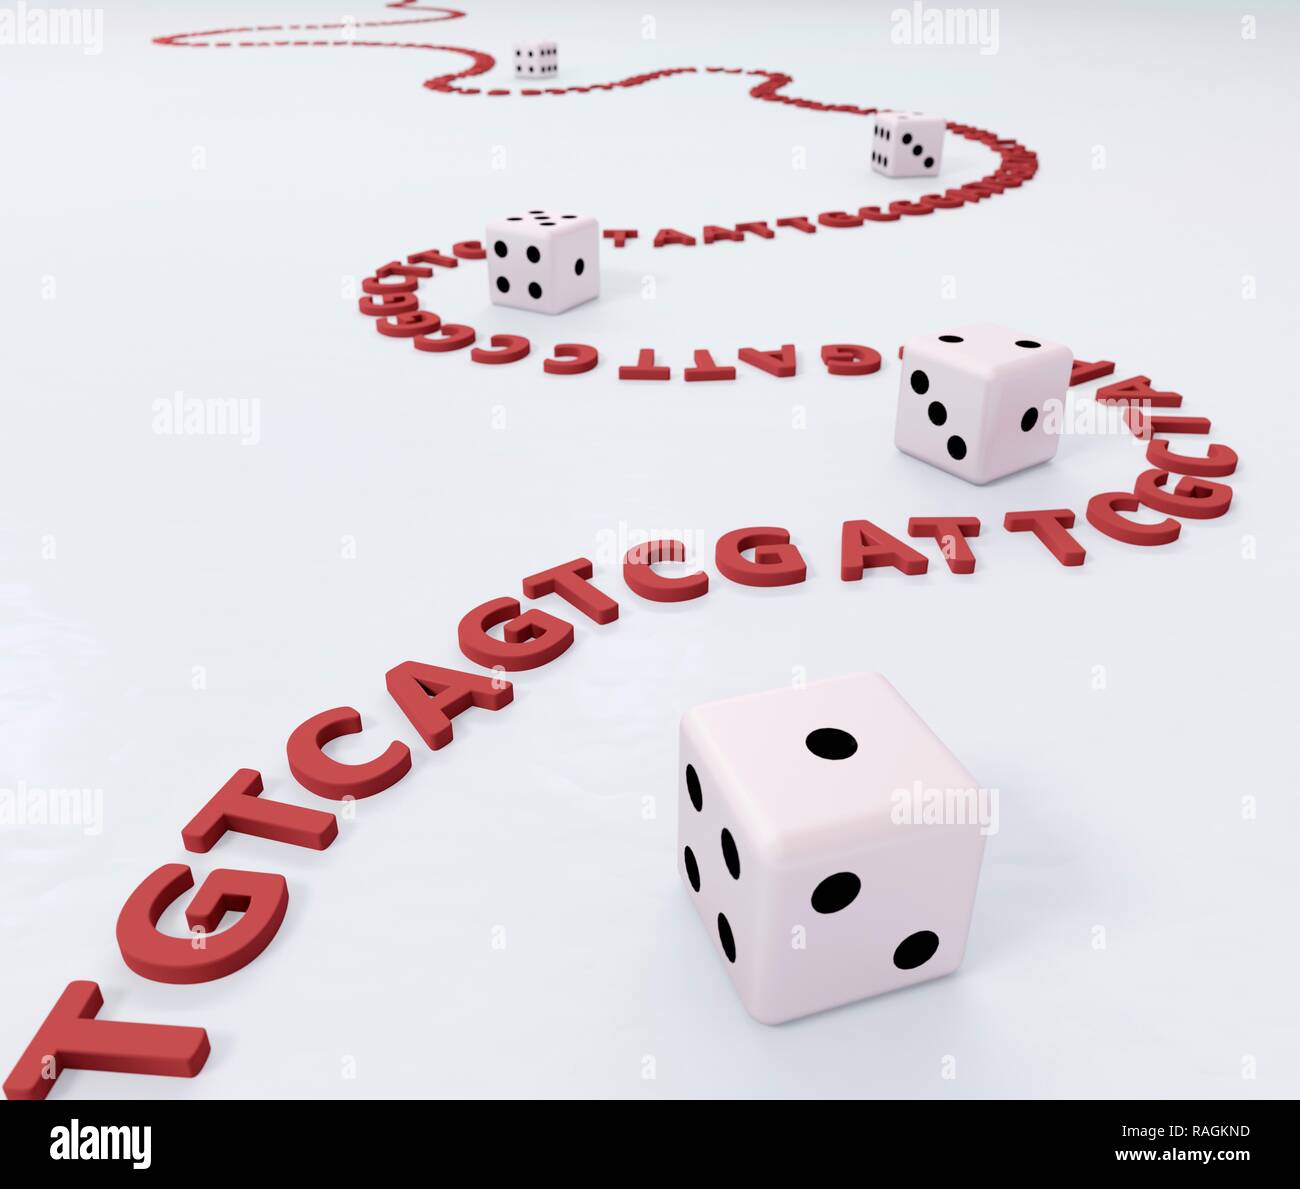 Stringa di lettere di DNA curling intorno a dadini, illustrazione del computer. Foto Stock